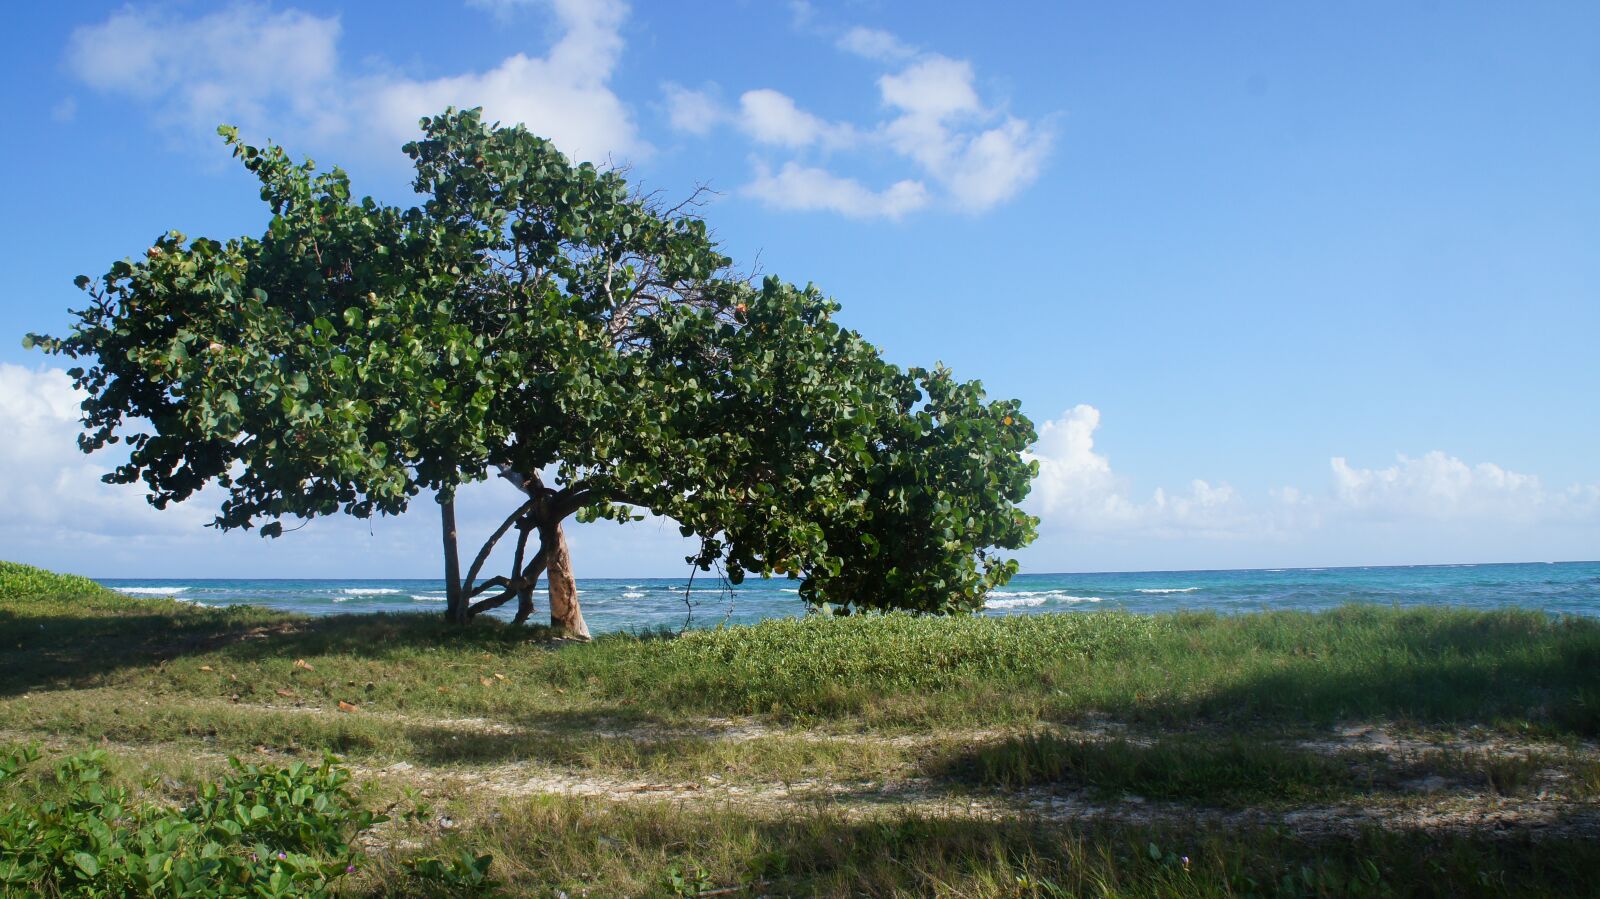 Sony Alpha NEX-C3 + Sony E 18-55mm F3.5-5.6 OSS sample photo. Beach, jamaica, caribbean photography